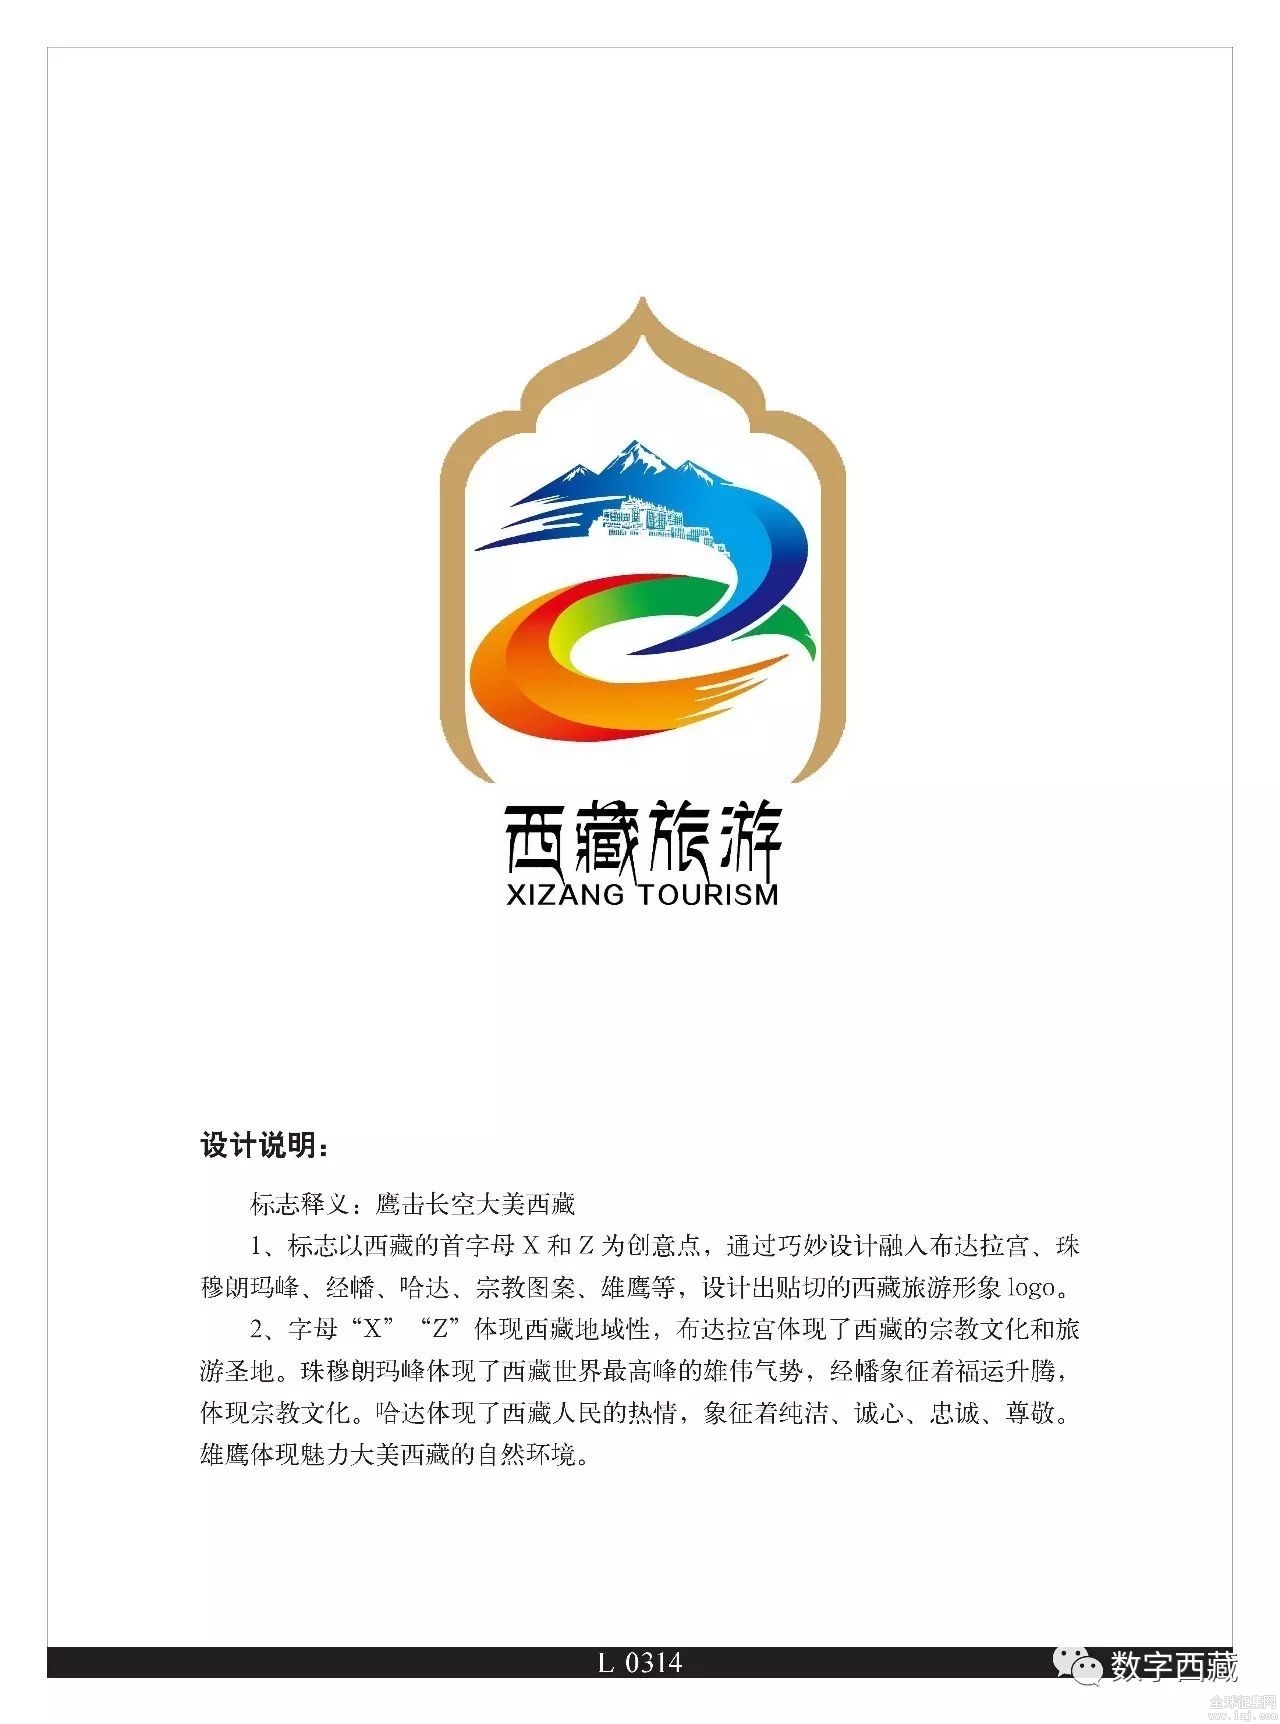 西藏"旅游logo设计和摄影图片征集大赛"获奖作品出炉啦!